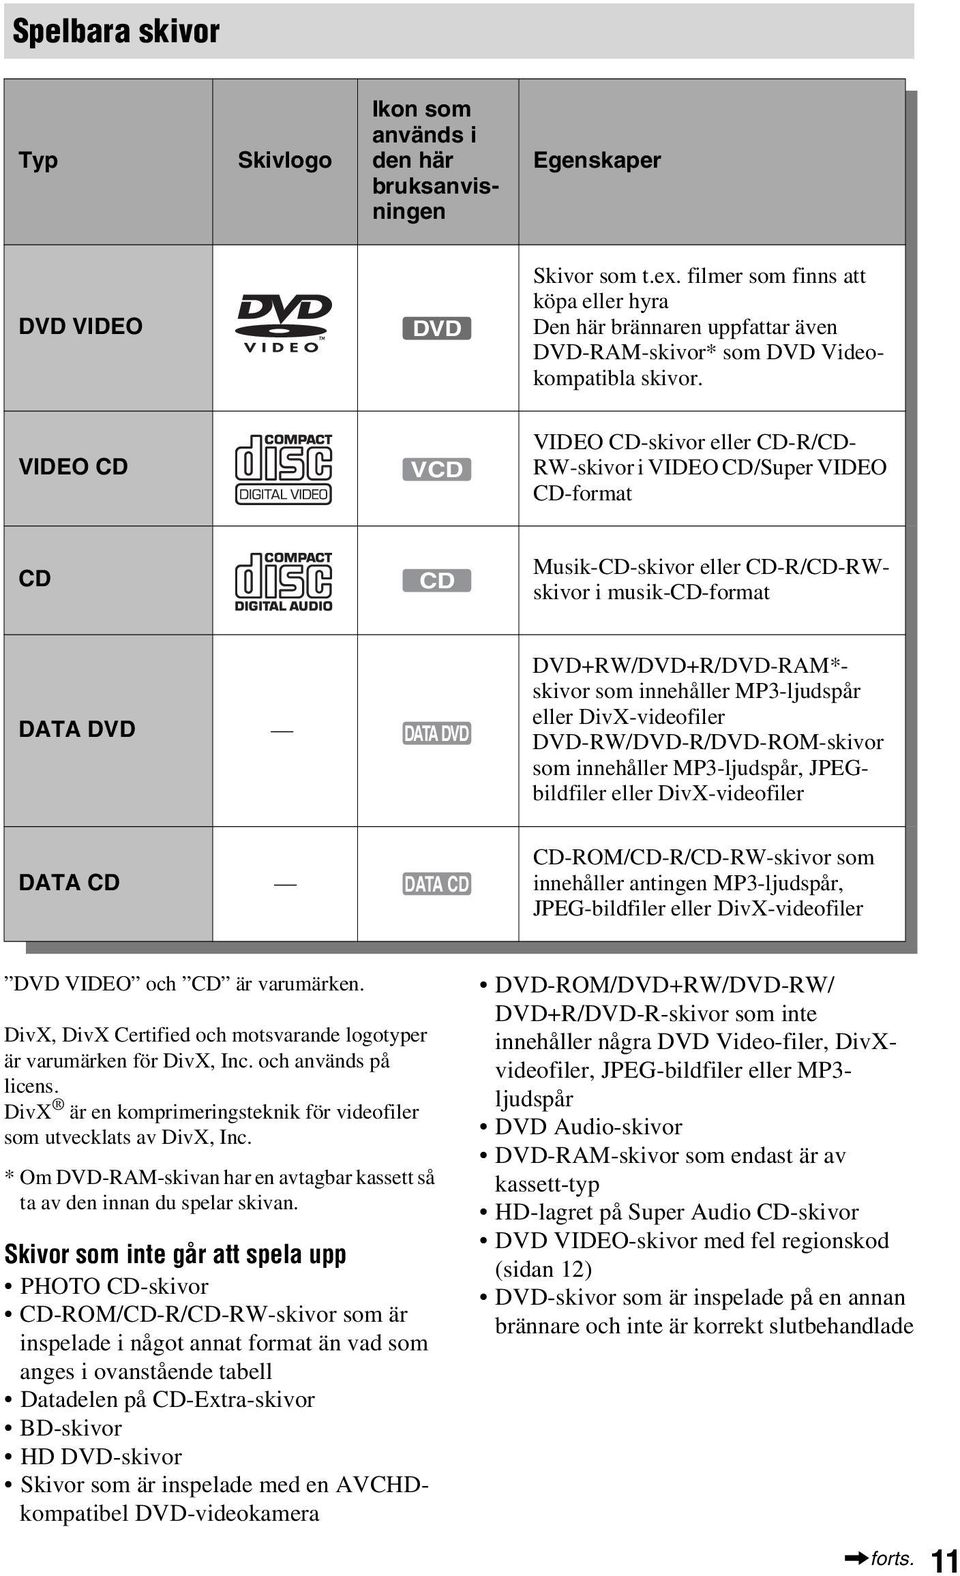 VIDEO CD VCD VIDEO CD-skivor eller CD-R/CD- RW-skivor i VIDEO CD/Super VIDEO CD-format CD CD Musik-CD-skivor eller CD-R/CD-RWskivor i musik-cd-format DATA DVD DATA DVD DVD+RW/DVD+R/DVD-RAM*- skivor